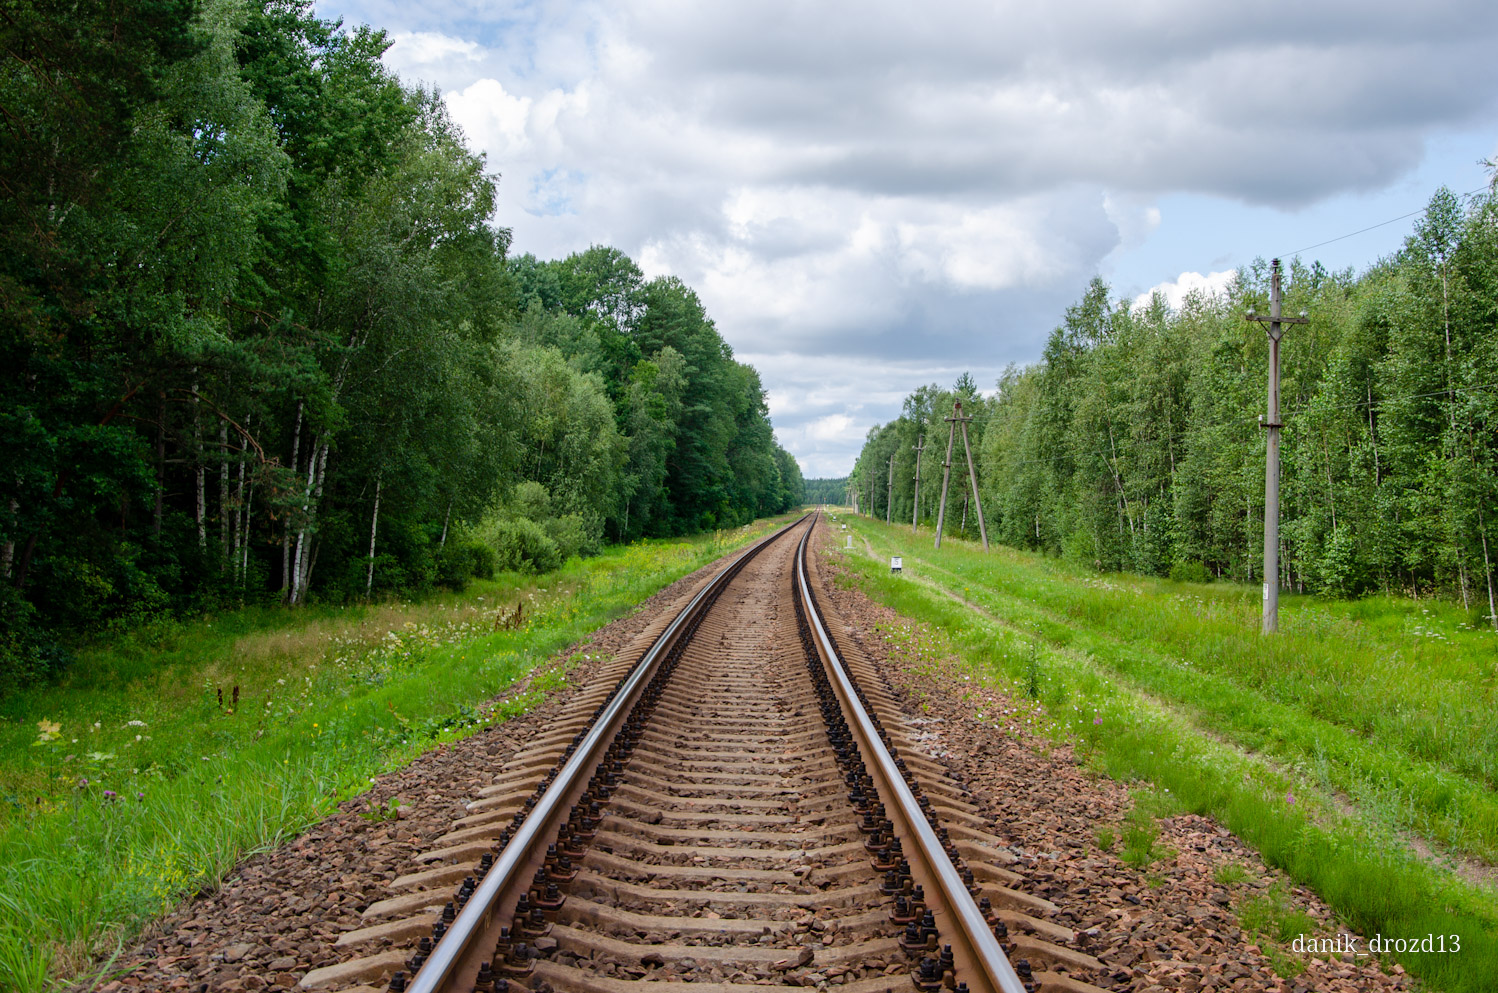 Bjeloruske željeznice — Stations & ways